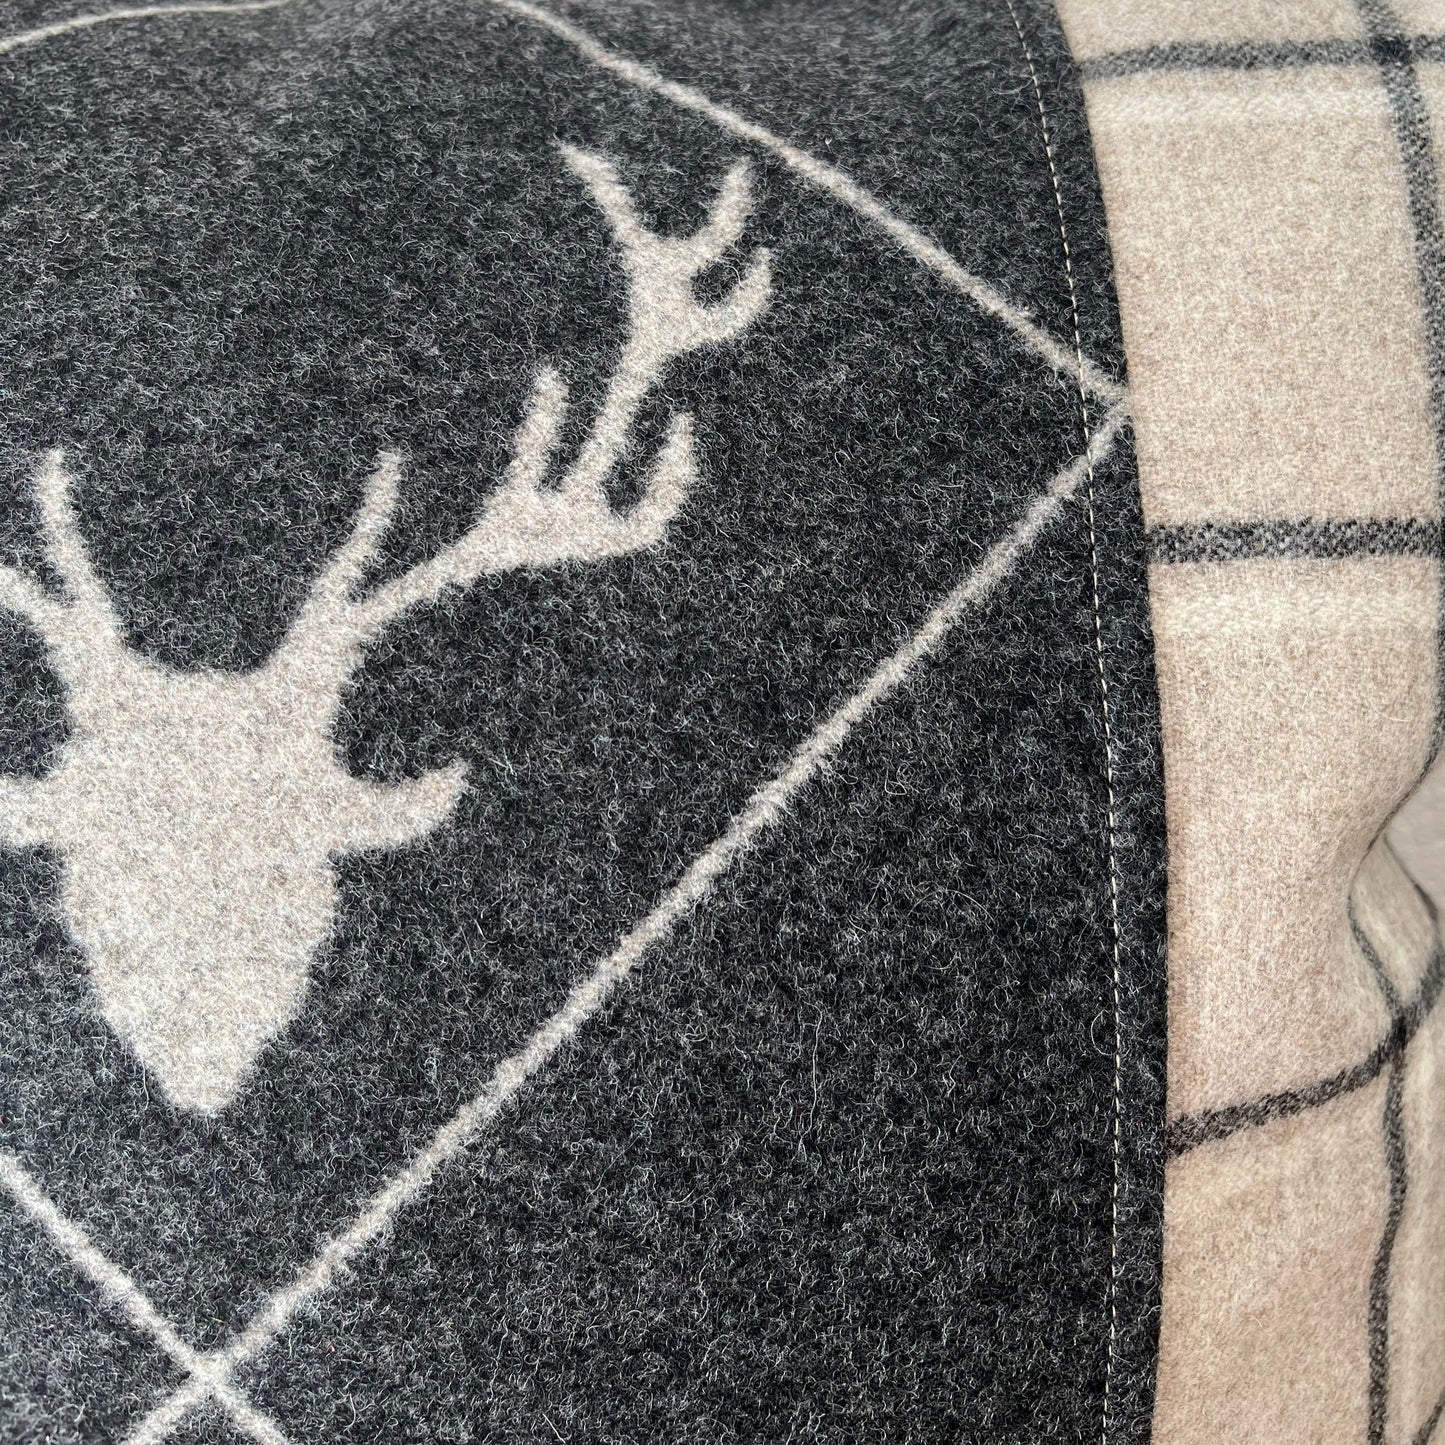 Deer design cushion cover, deer centered, grey/beige